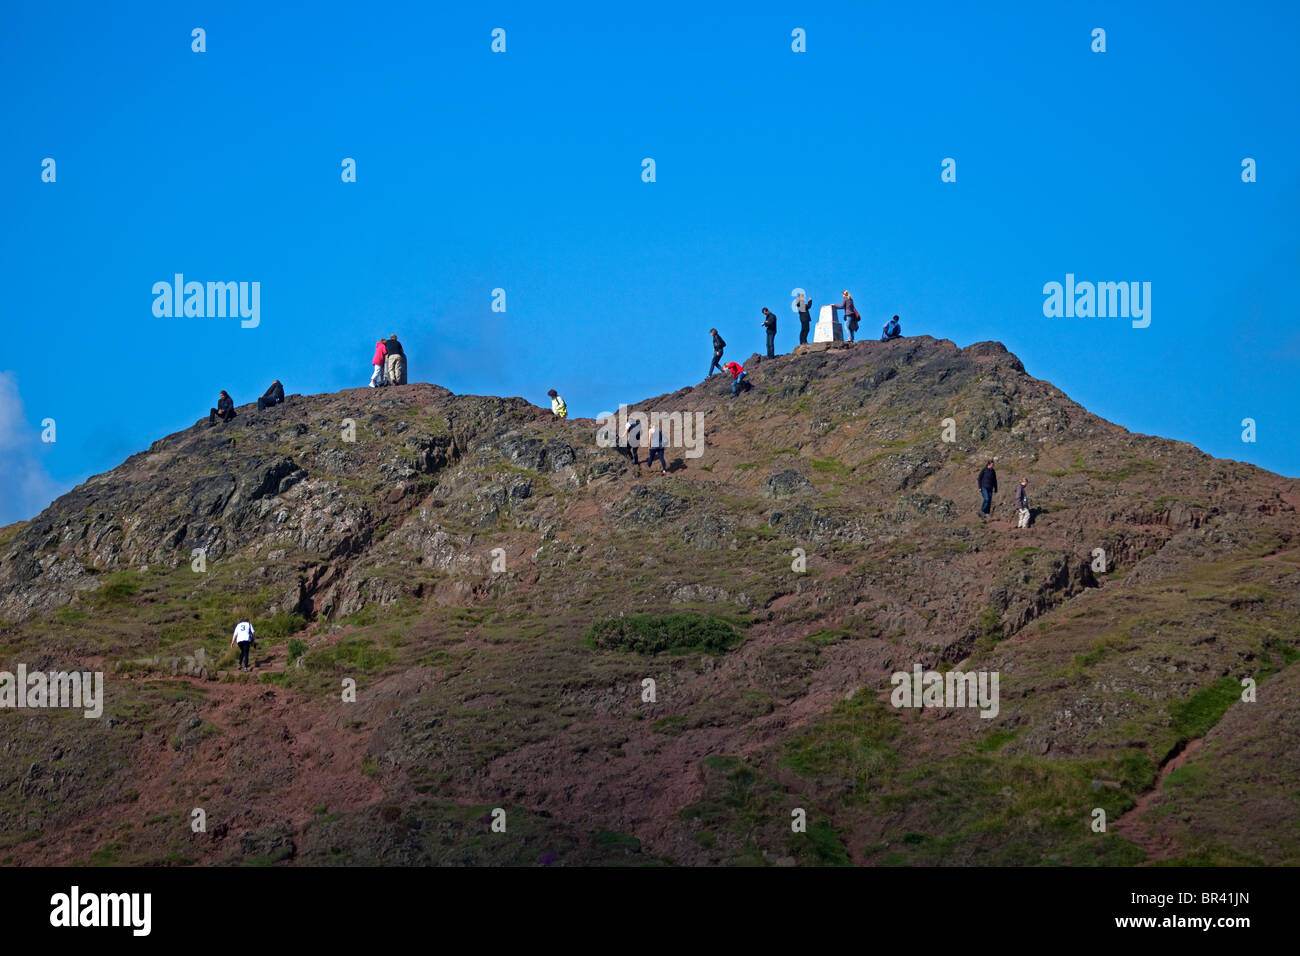 People on Summit of Arthur's Seat, Holyrood Park, Edinburgh, Scotland UK, Europe Stock Photo